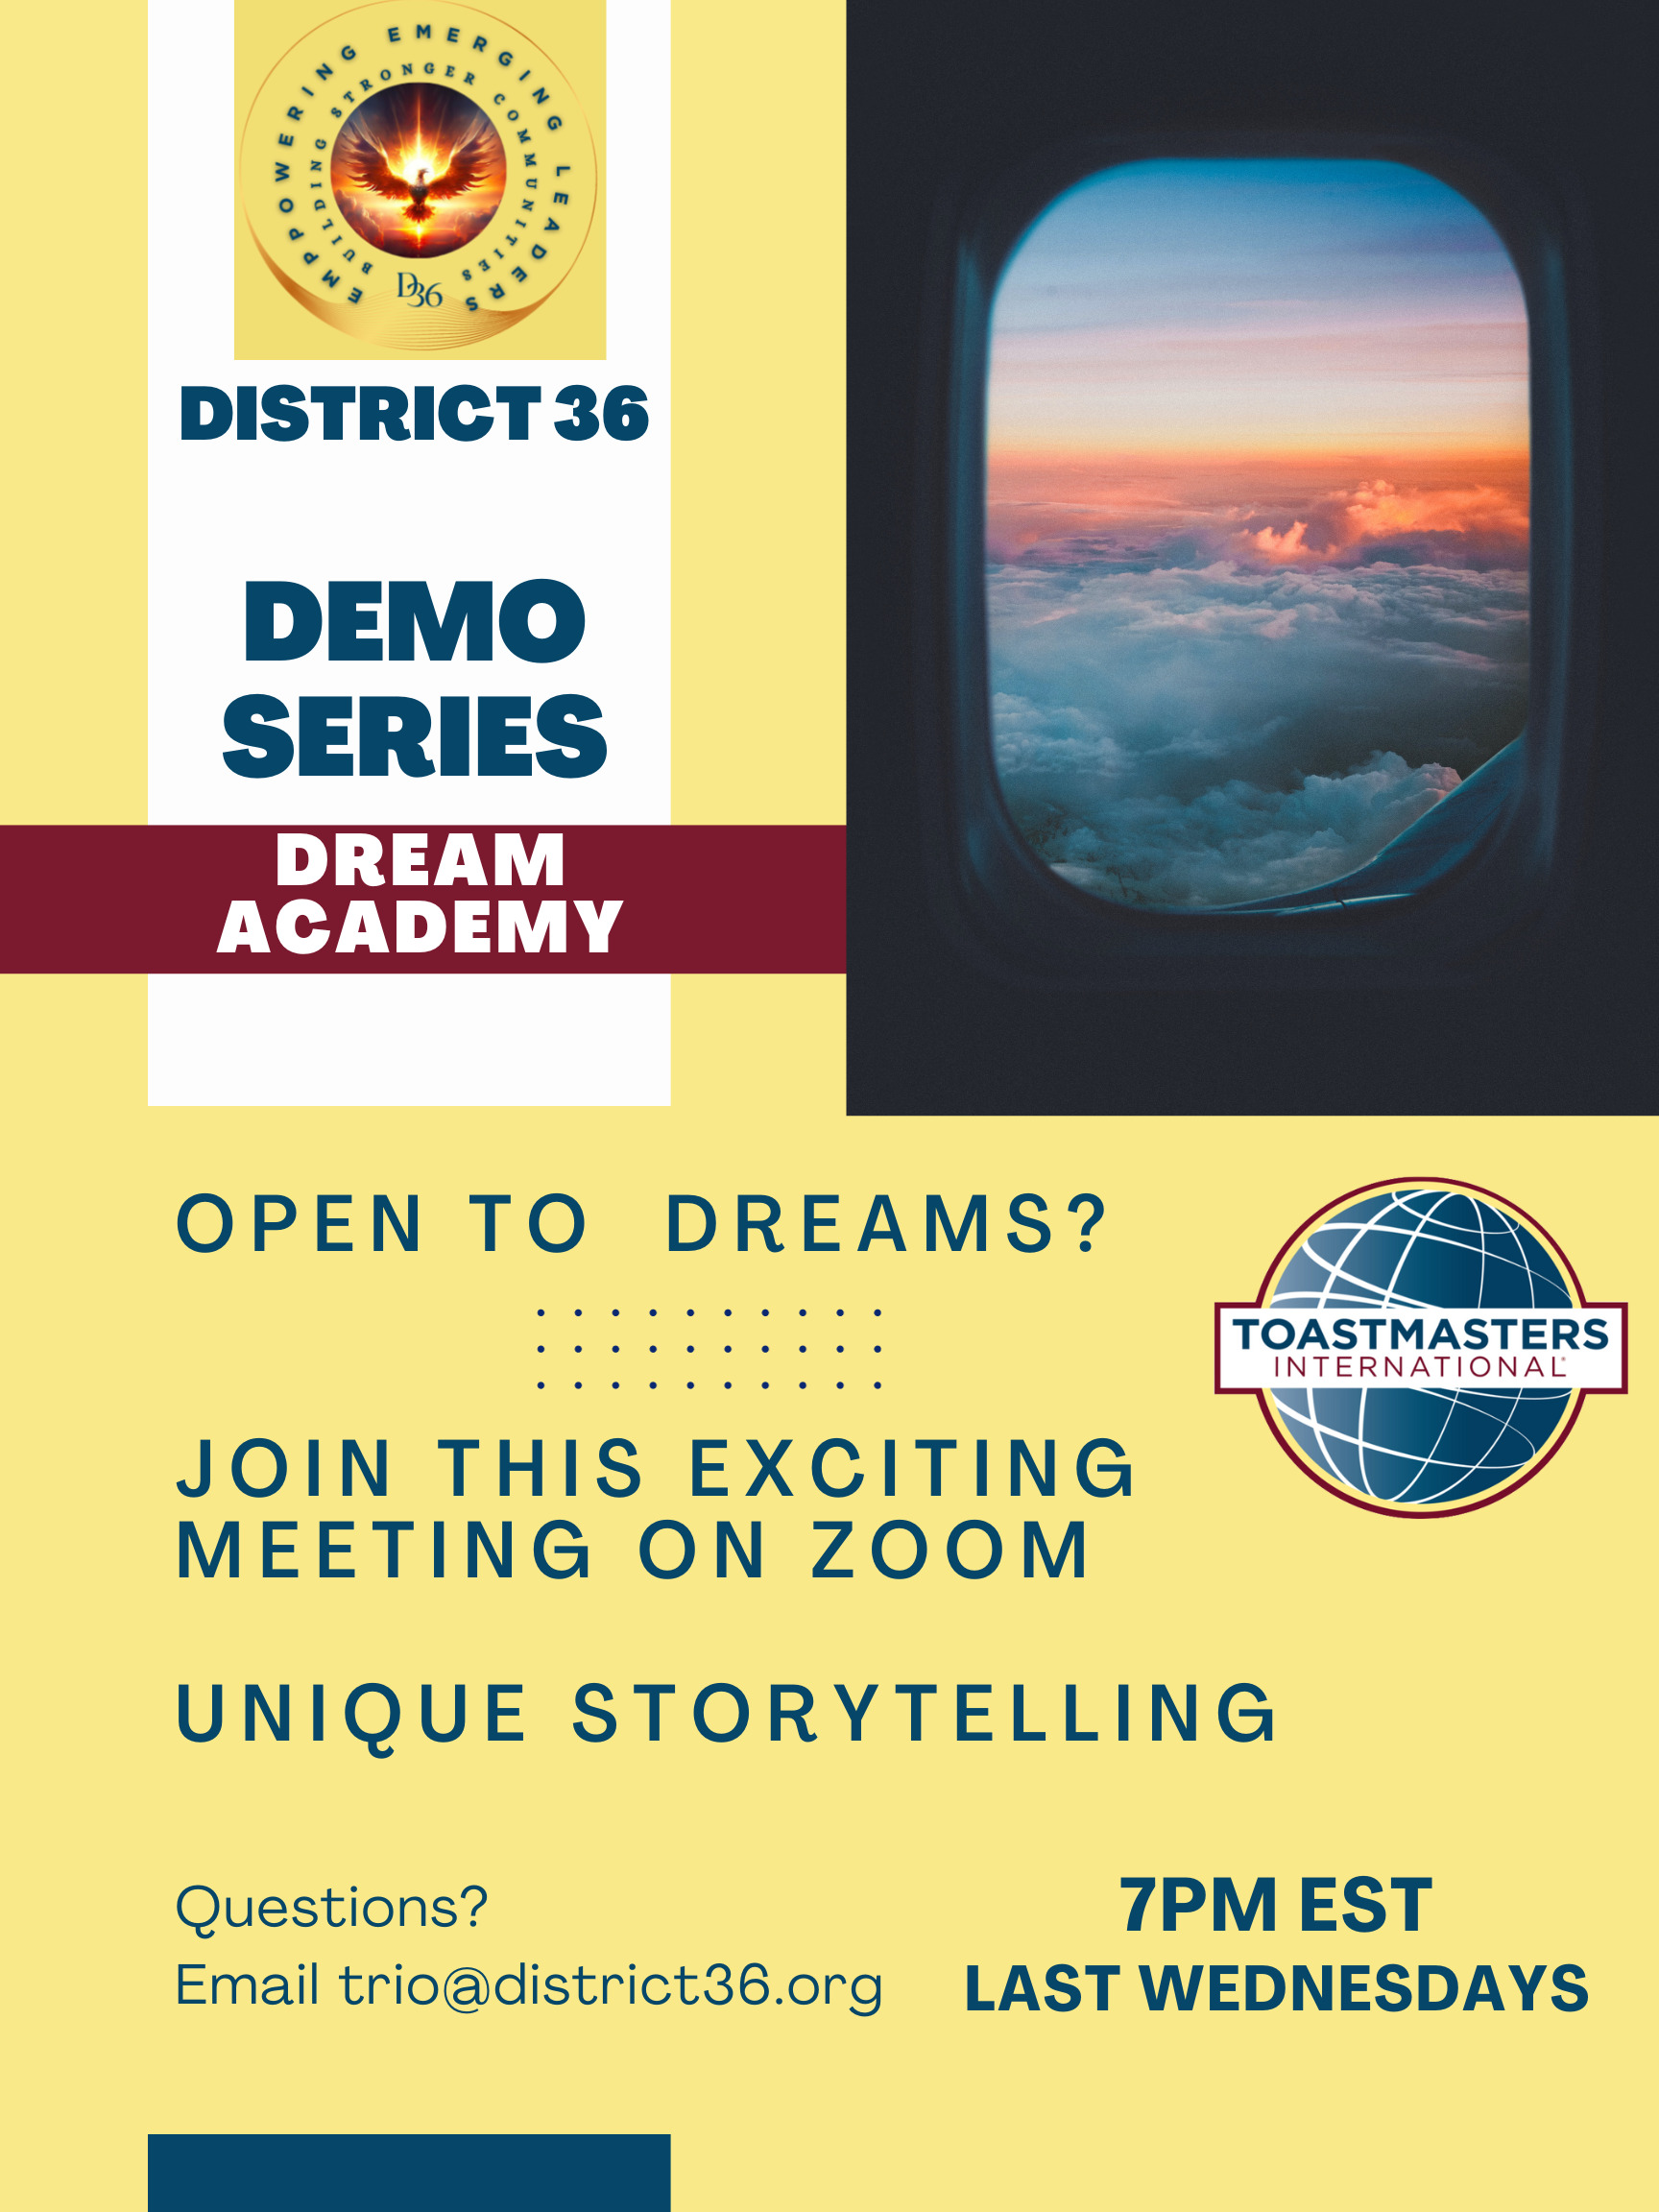 Dream_Academy_Demos_Poster